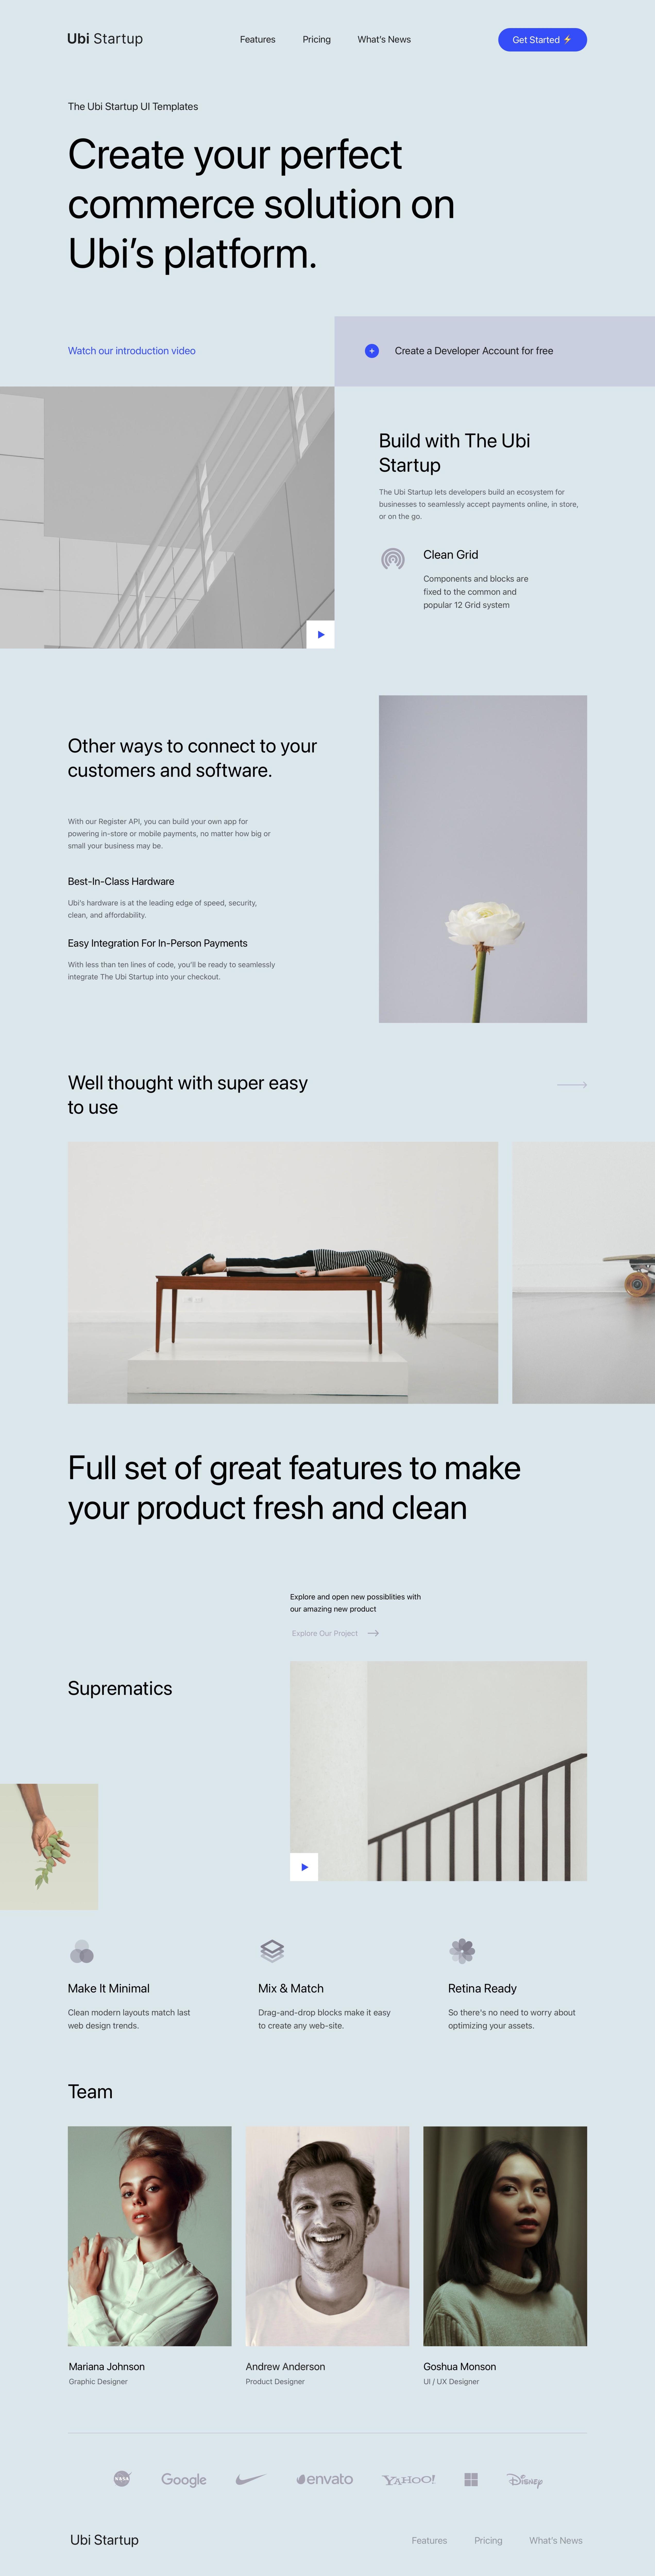 2个现代典雅创意工作室网站设计模板集